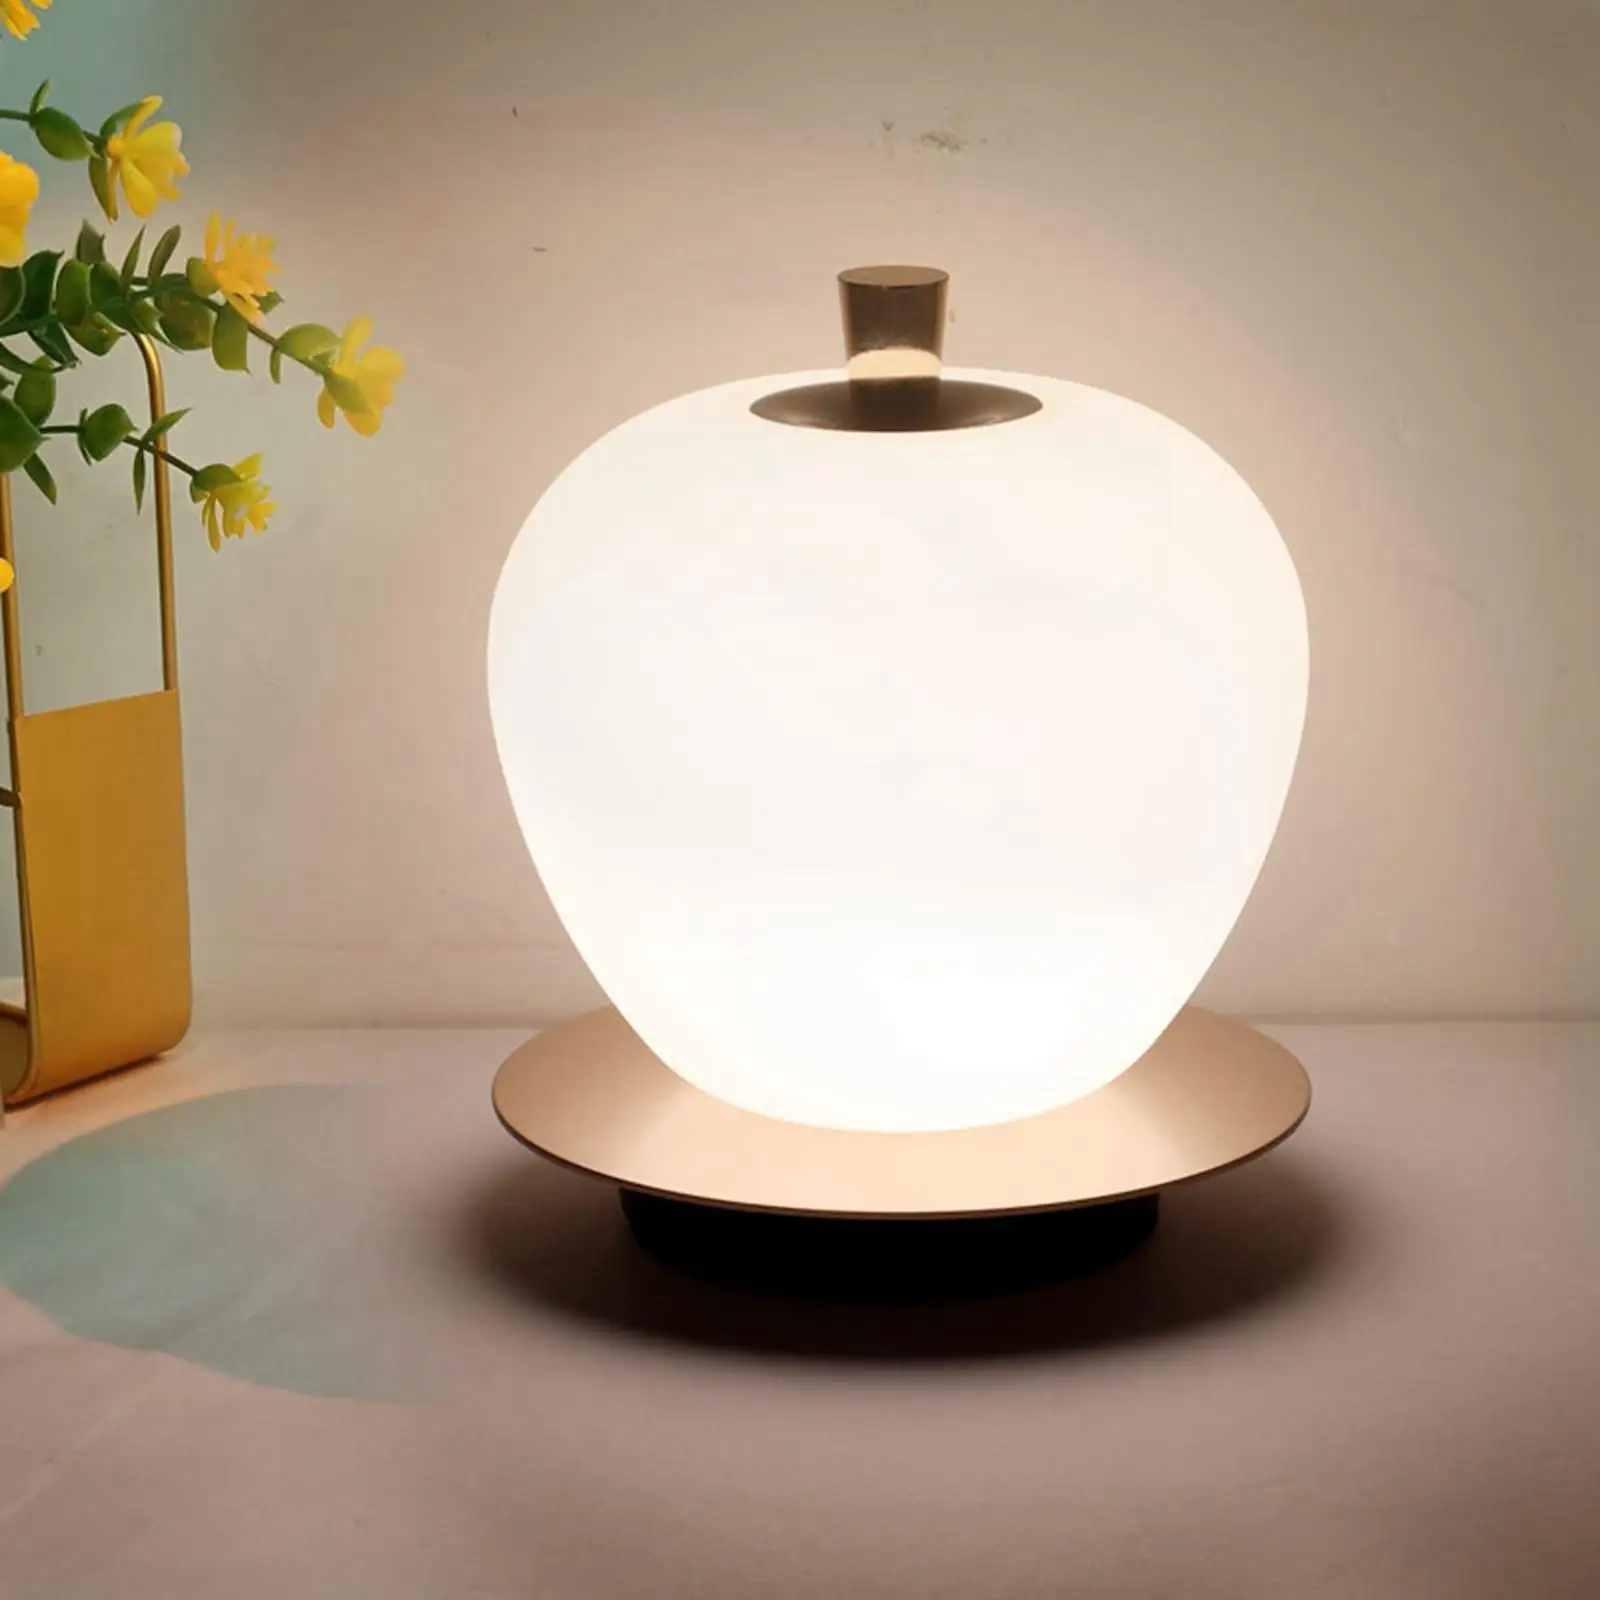 Desk Lights Living Room Creative Fruit-Shaped Desk Lamp 1PC LED Table Lamp Model Desk Lights Atmosphere Night Light for Kids